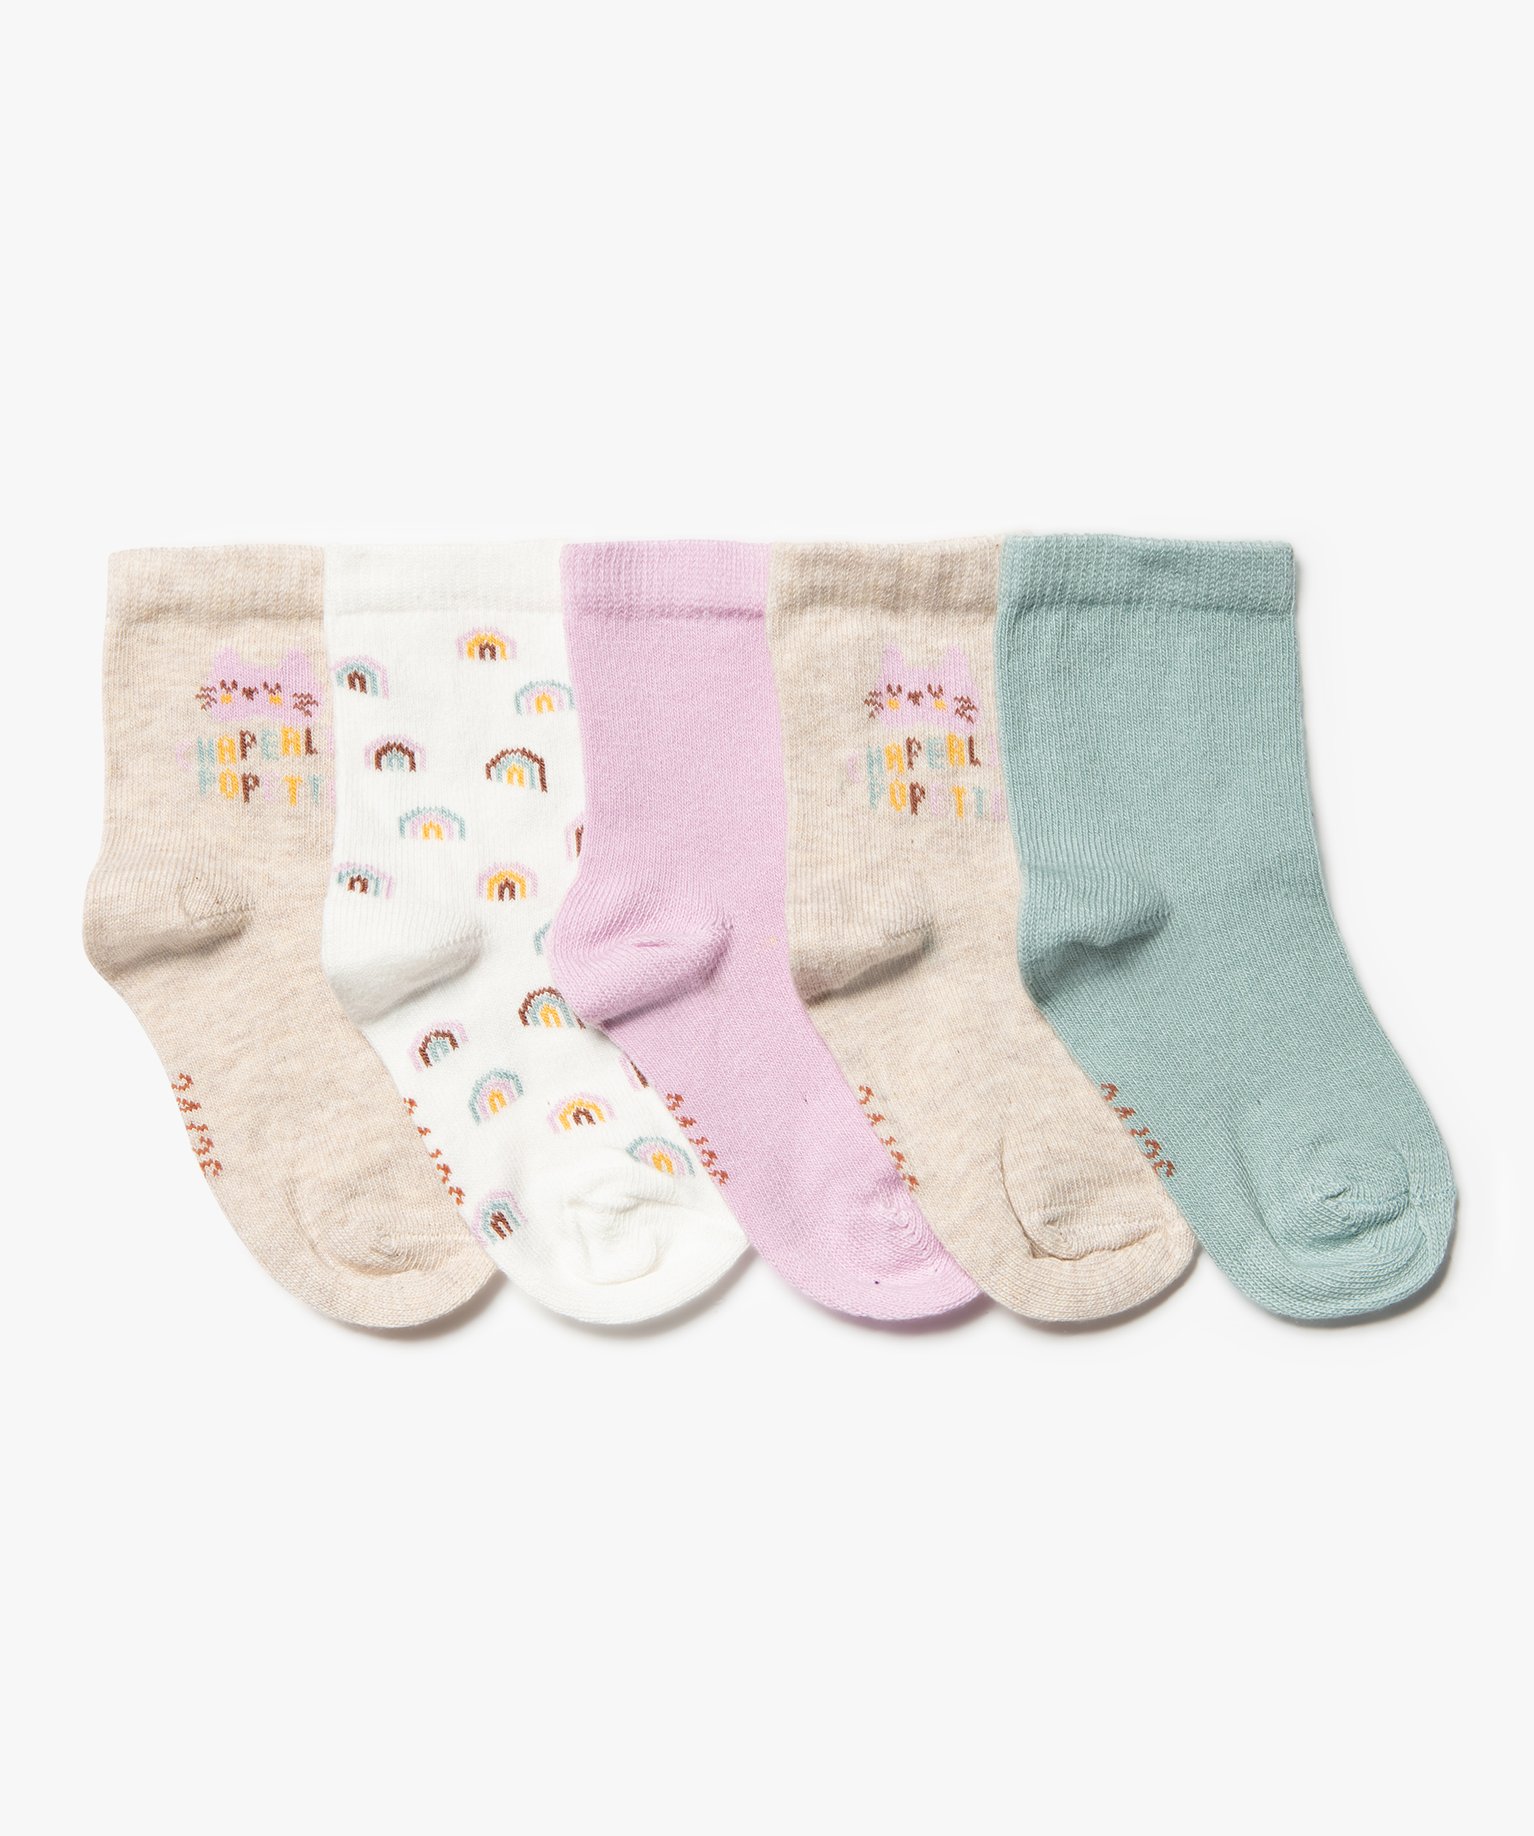 chaussettes bebe fille a imprime chat (lot de 5) multicolore chaussettes